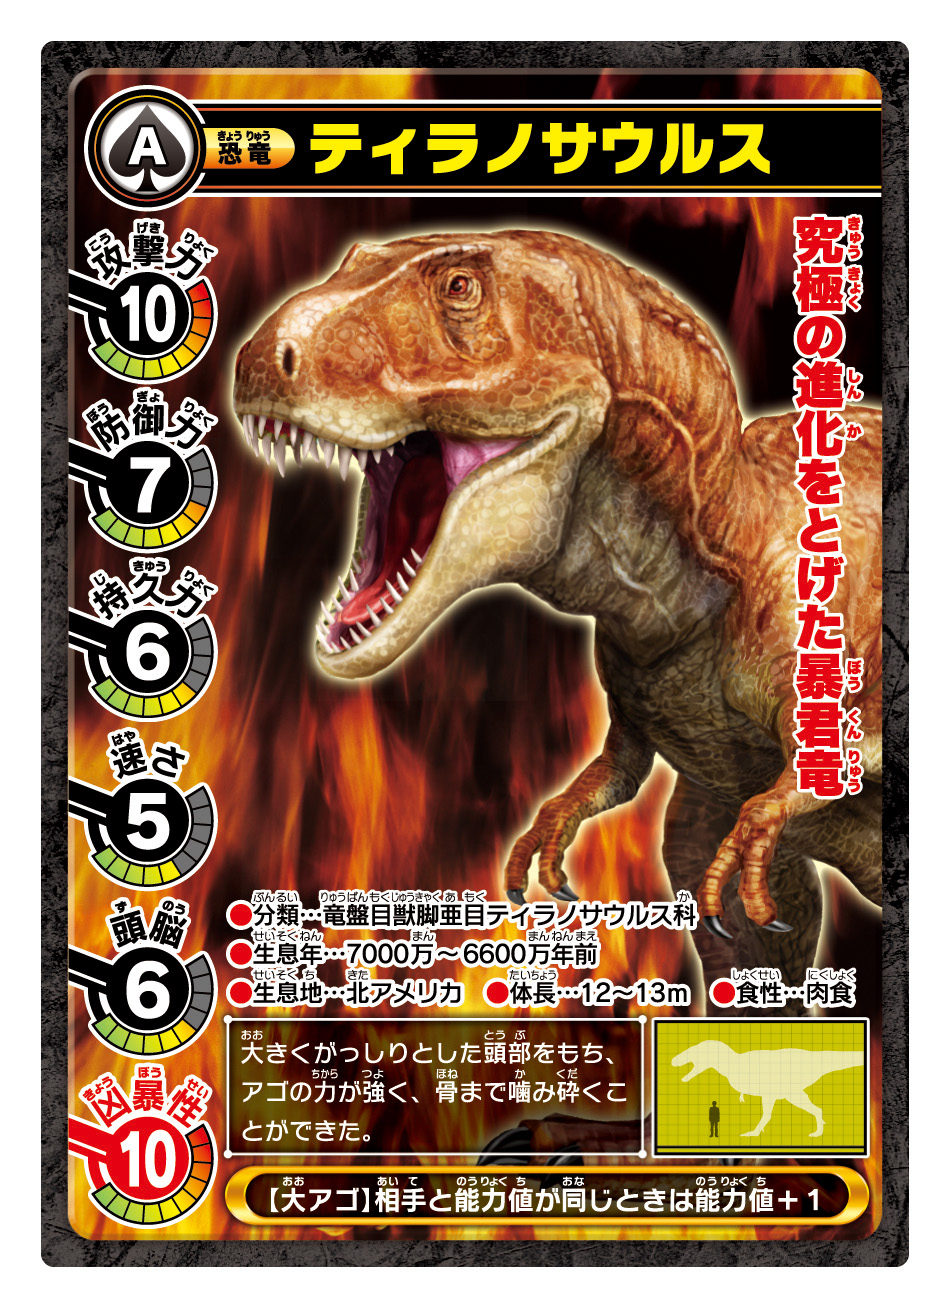 「ティラノサウルスのカード」パッケージ